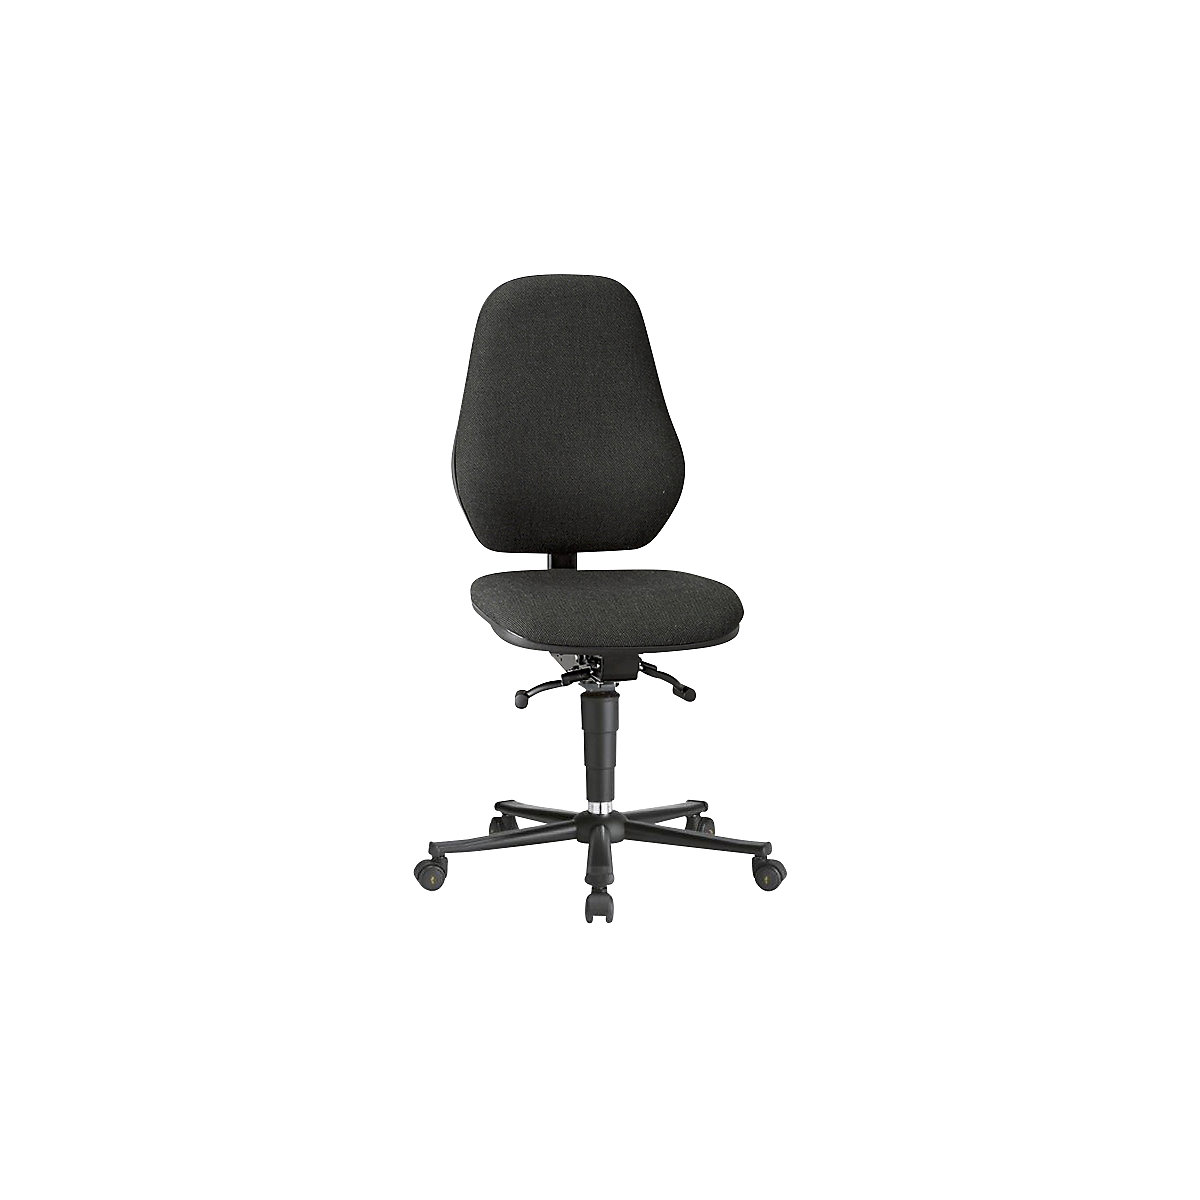 Pracovní otočná židle BASIC, ESD - bimos